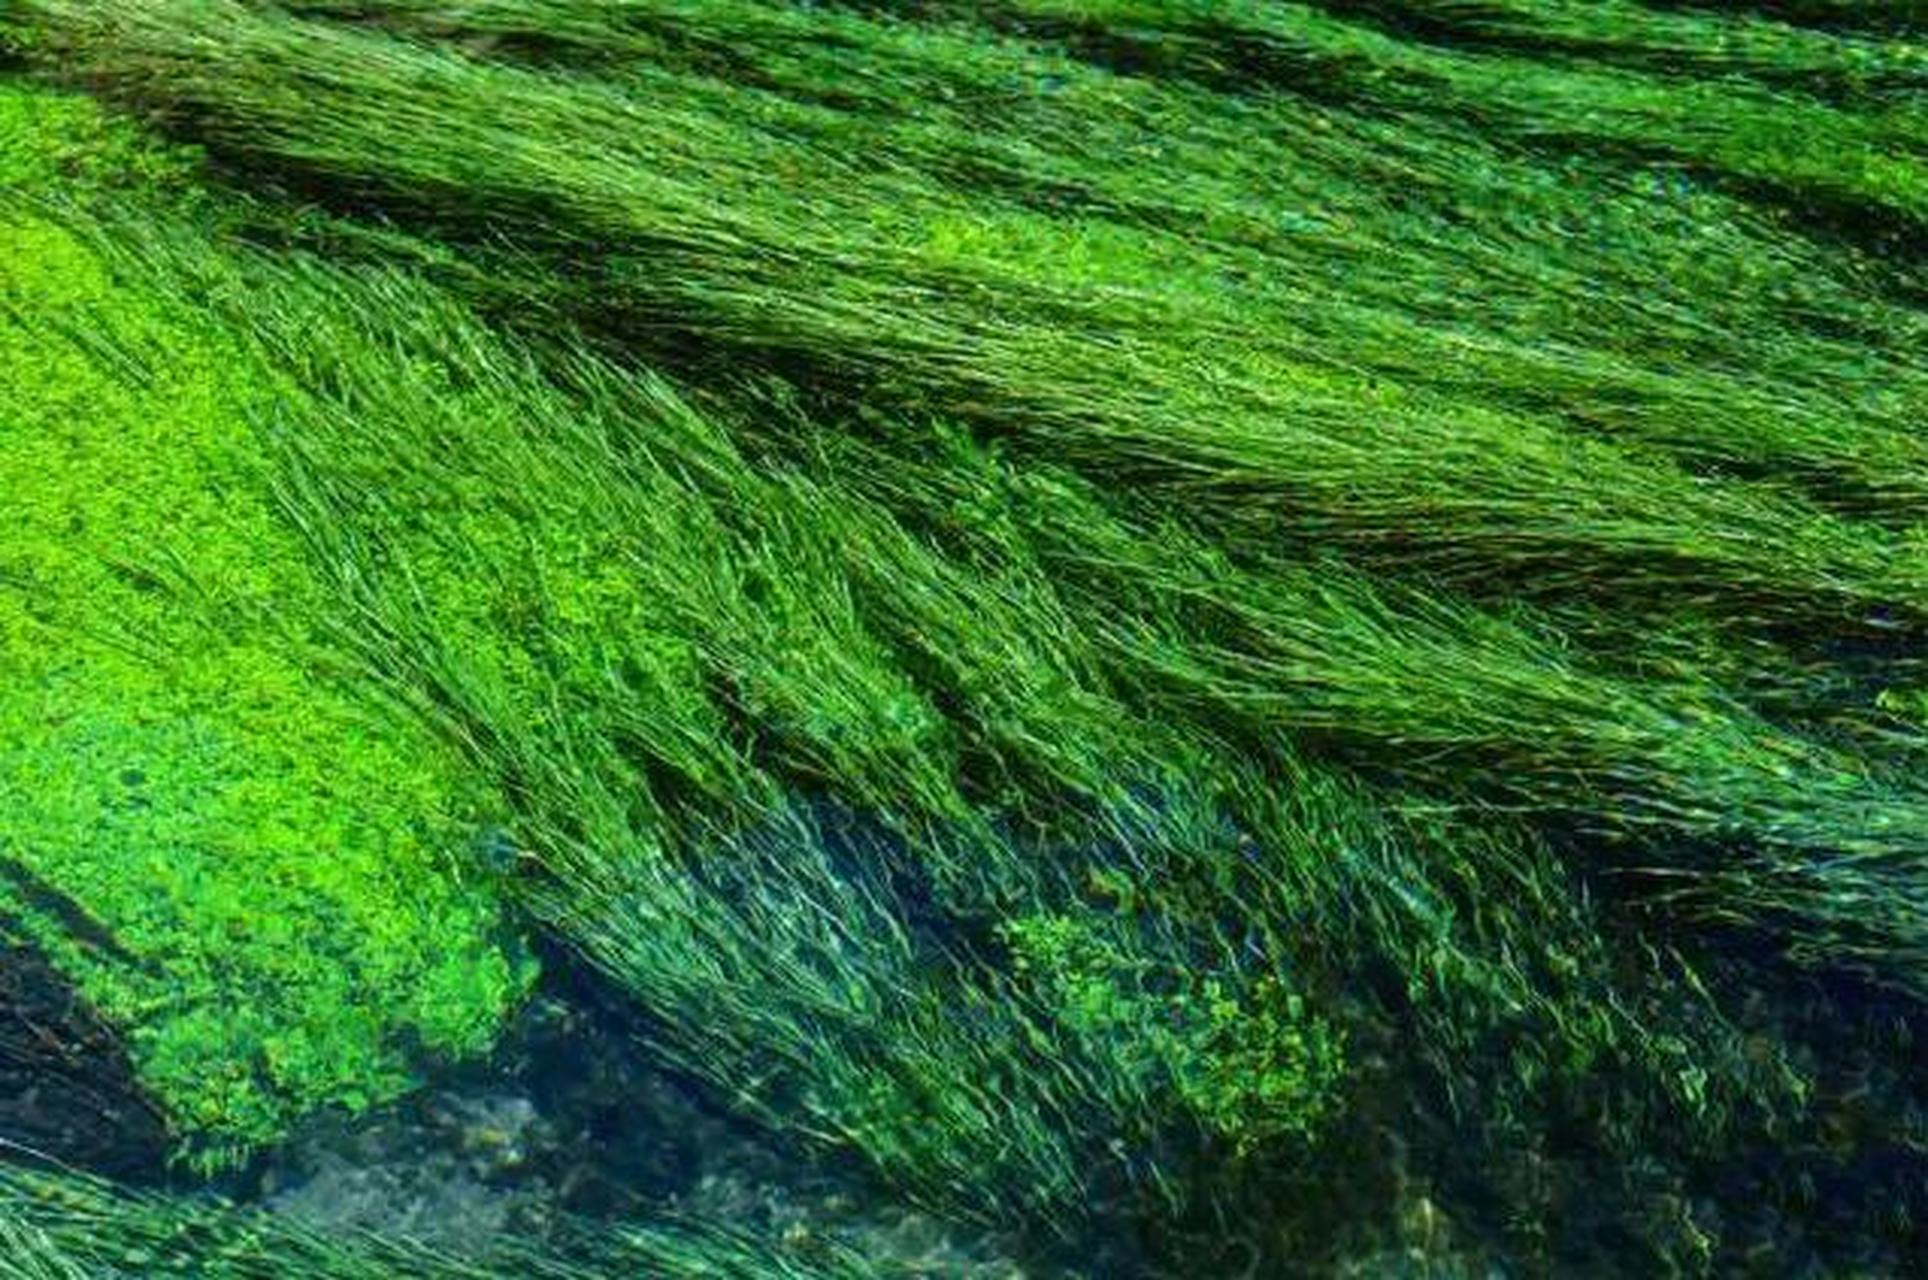 细长的水草成片地倒伏在流水里,随水浮动,好像没人梳理的绿头发,摊开